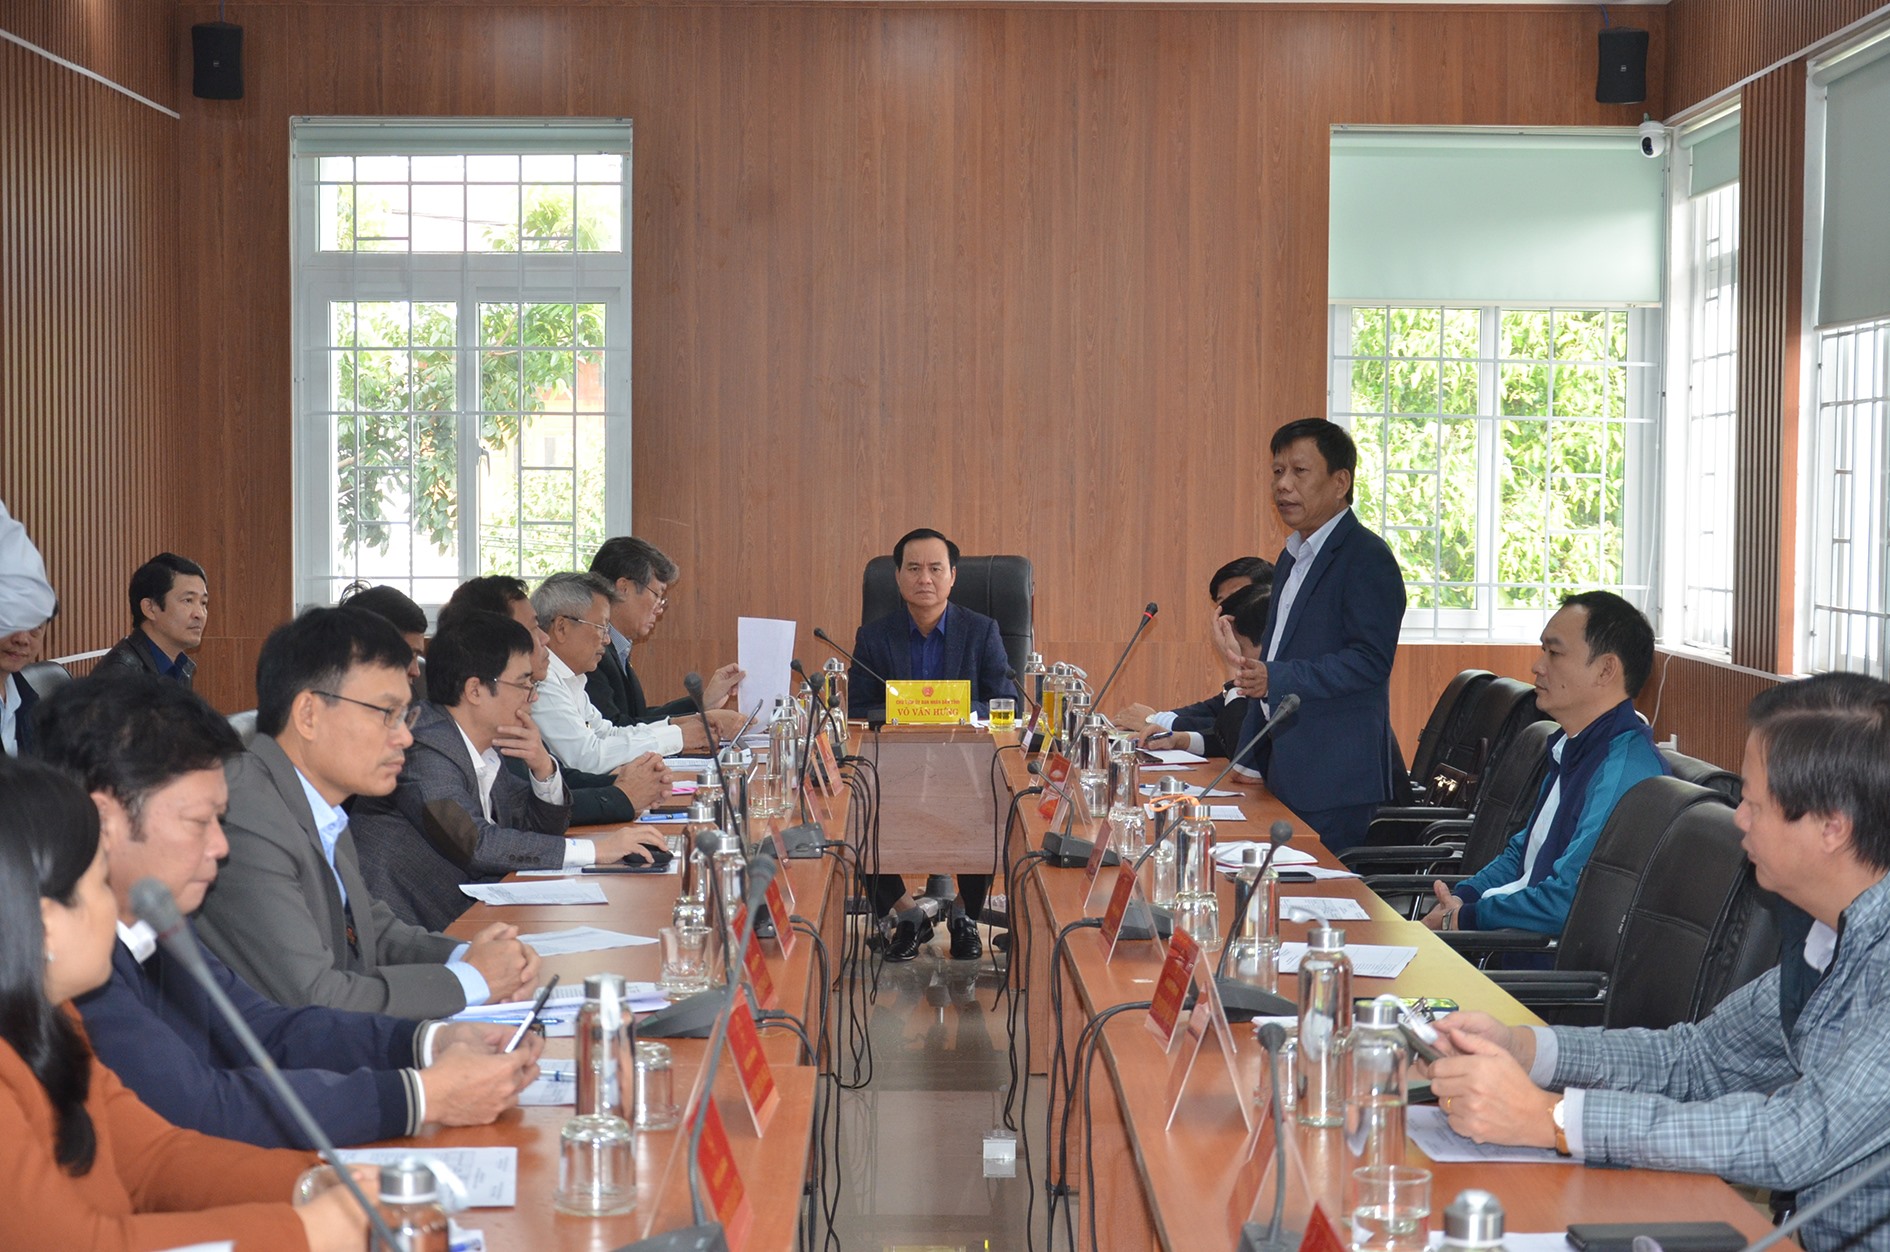 Lãnh đạo Sở Tư pháp báo cáo với Chủ tịch UBND tỉnh Võ Văn Hưng về việc áp dụng pháp luật đối với một trường hợp cụ thể tại thị xã Quảng Trị - Ảnh: L.M